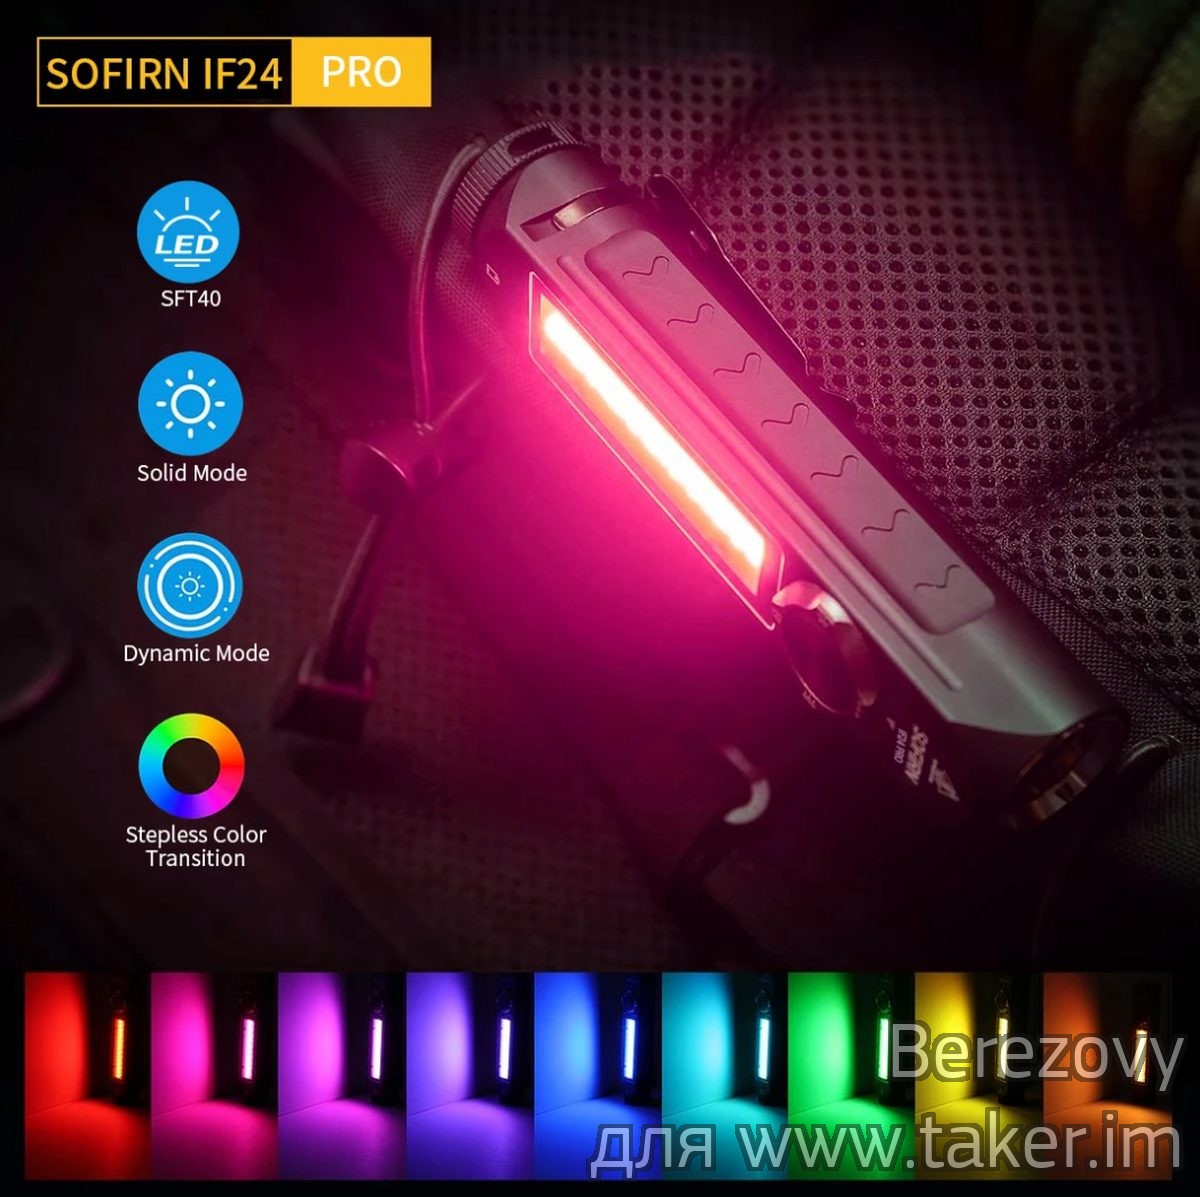 Обзор фонаря Sofirn IF24 PRO - обновленная версия со стабилизацией (спот/флуд/RGB)